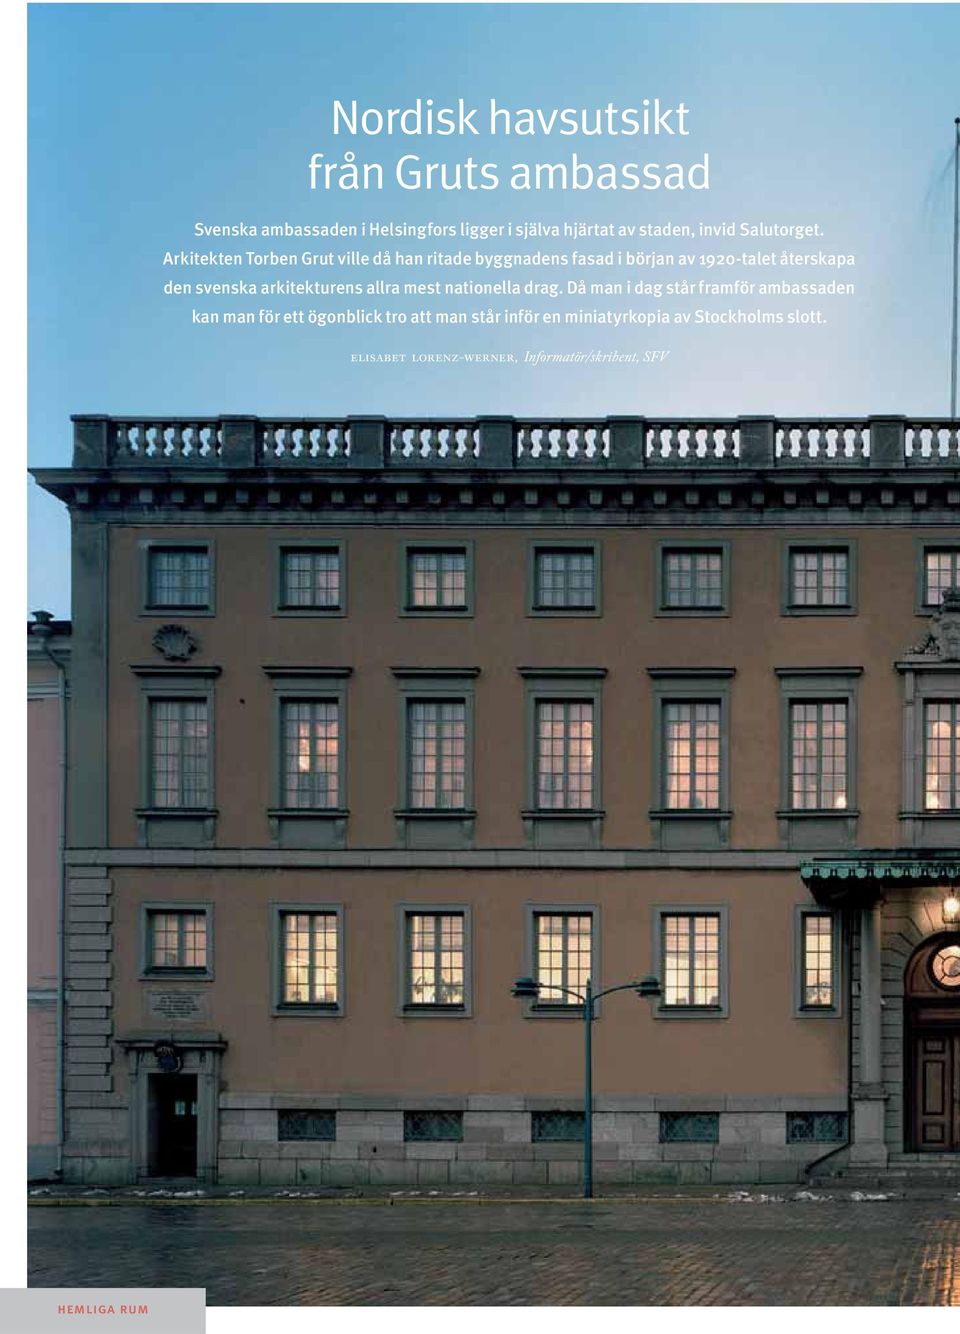 Arkitekten Torben Grut ville då han ritade byggnadens fasad i början av 1920-talet återskapa den svenska